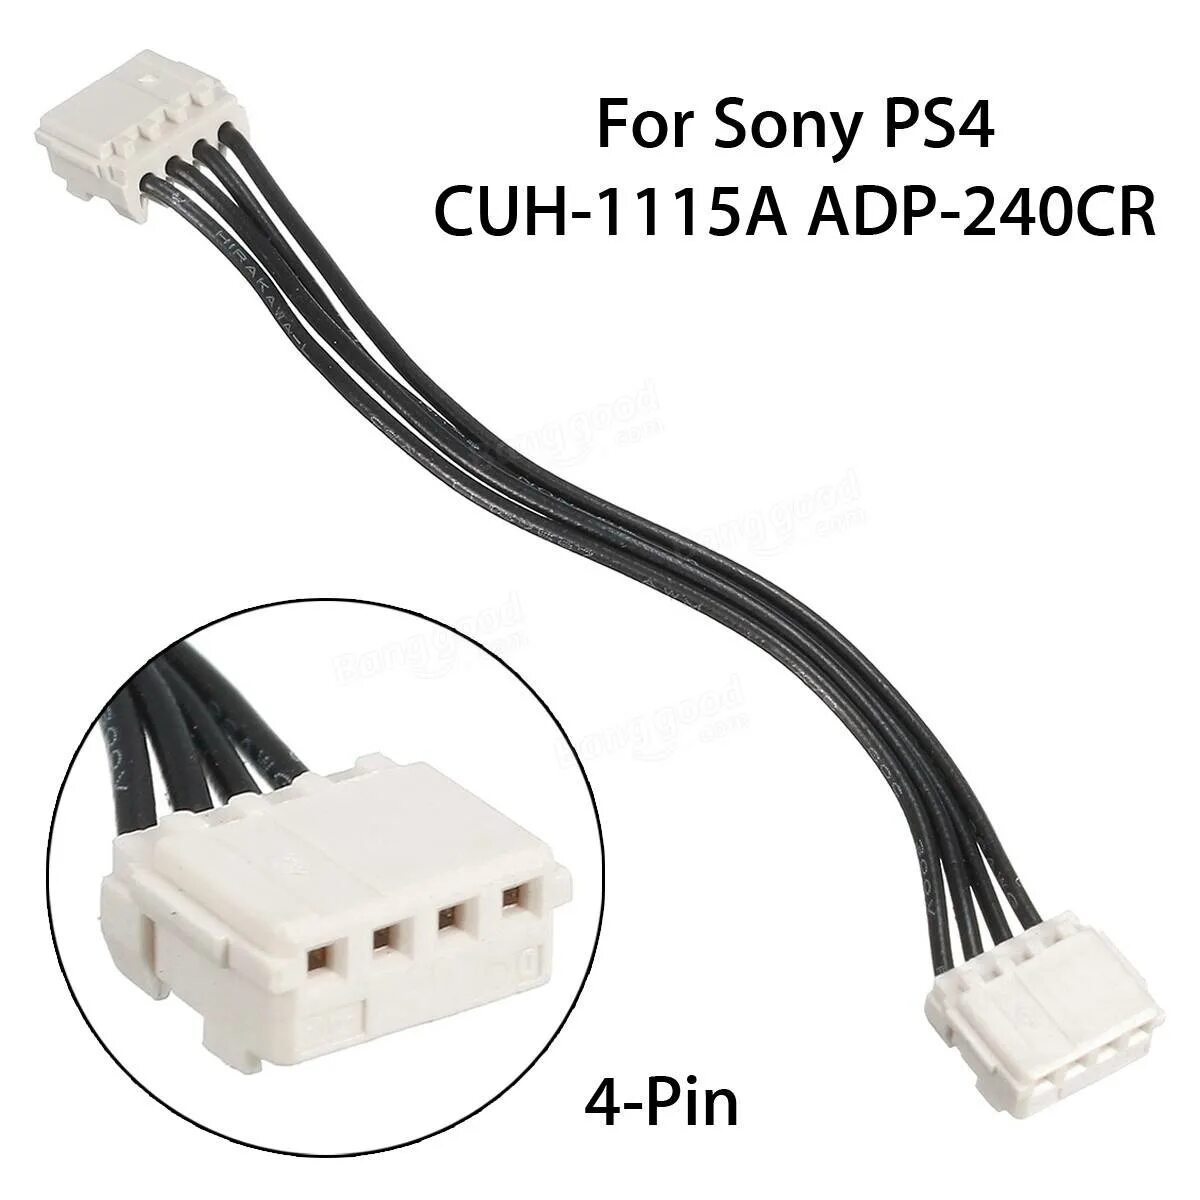 Кабель питания ps5. Провод питания PS 1фат. Разъём блока питания ps4 Pro. Power Cable for Sony ps4 cuh1115a adp240cr sale - RC Toys & Hobbies. Блок питания ПС 4 4 Pin Cable.